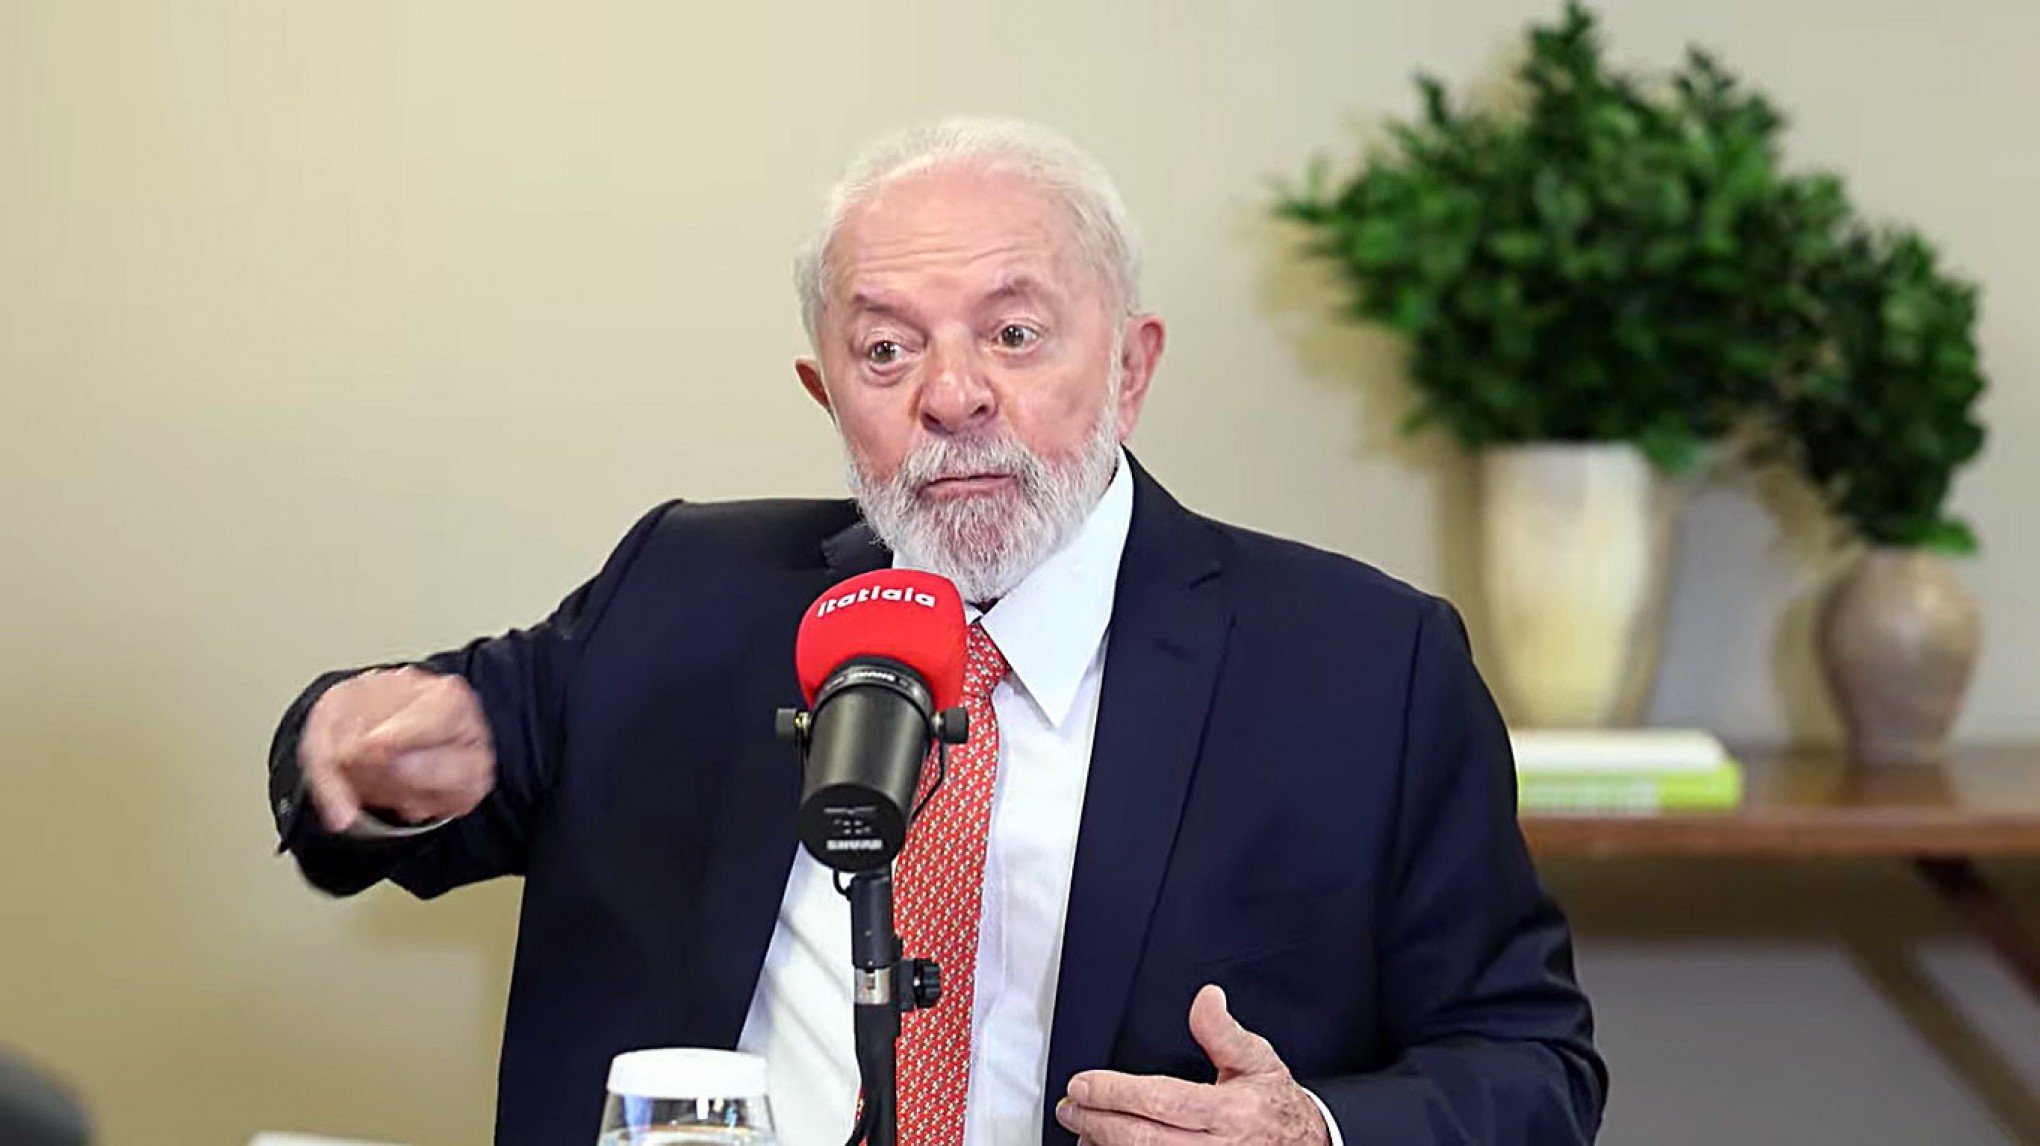 IMPOSTO DE RENDA: Lula diz que fará, a cada ano, reajuste na tabela até que isenção alcance R$ 5 mil